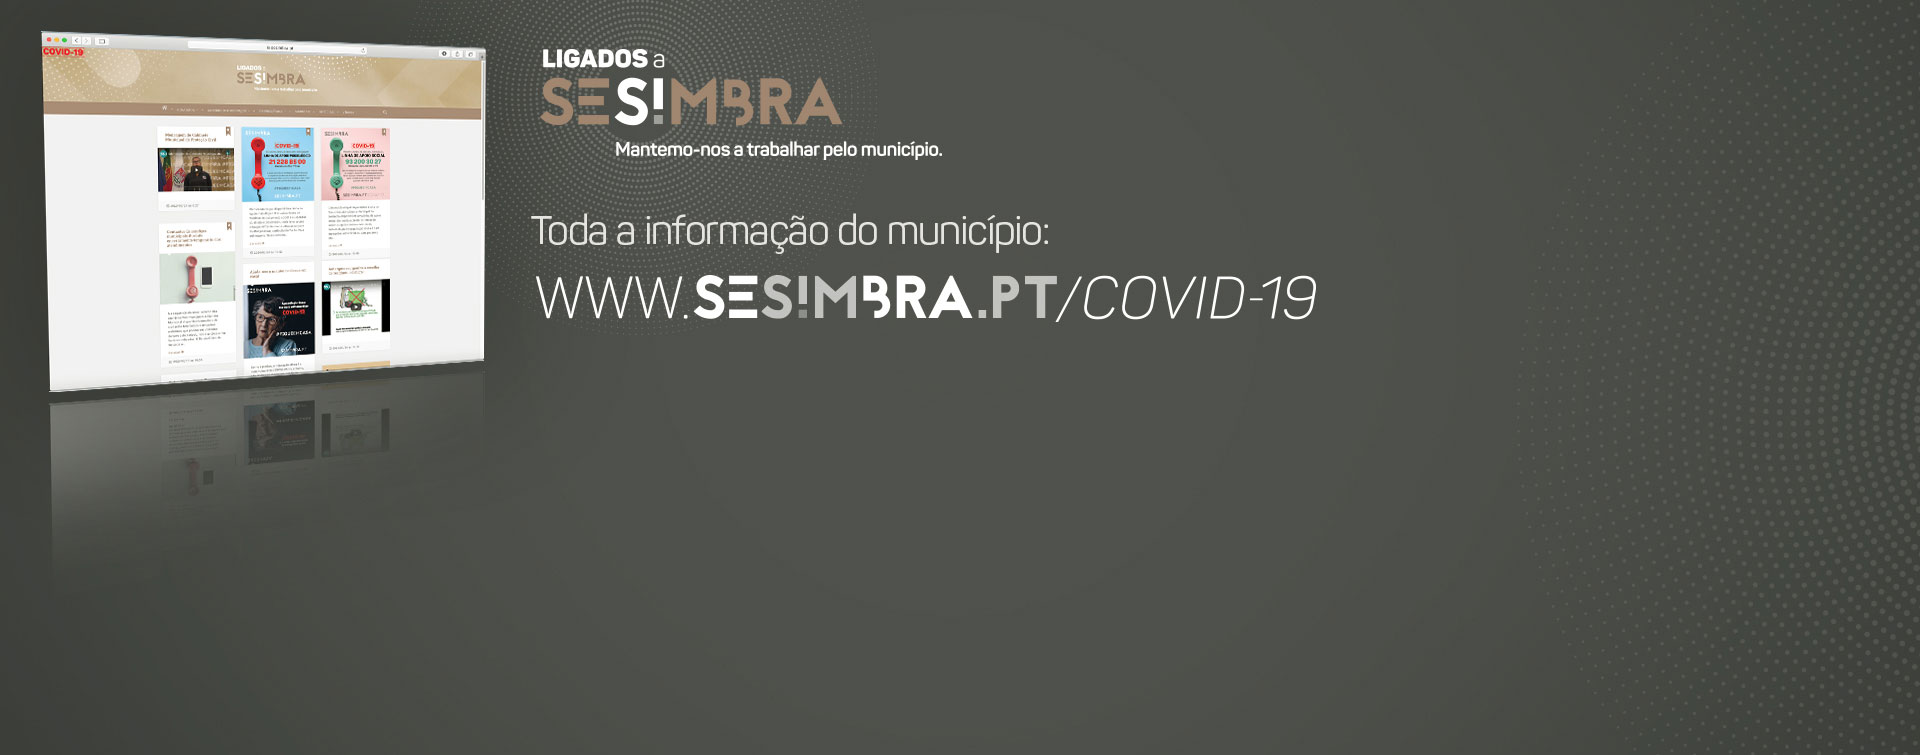 Informação sobre COVID-19 em Sesimbra - Consulte o site www.sesimbra.pt/covid-19